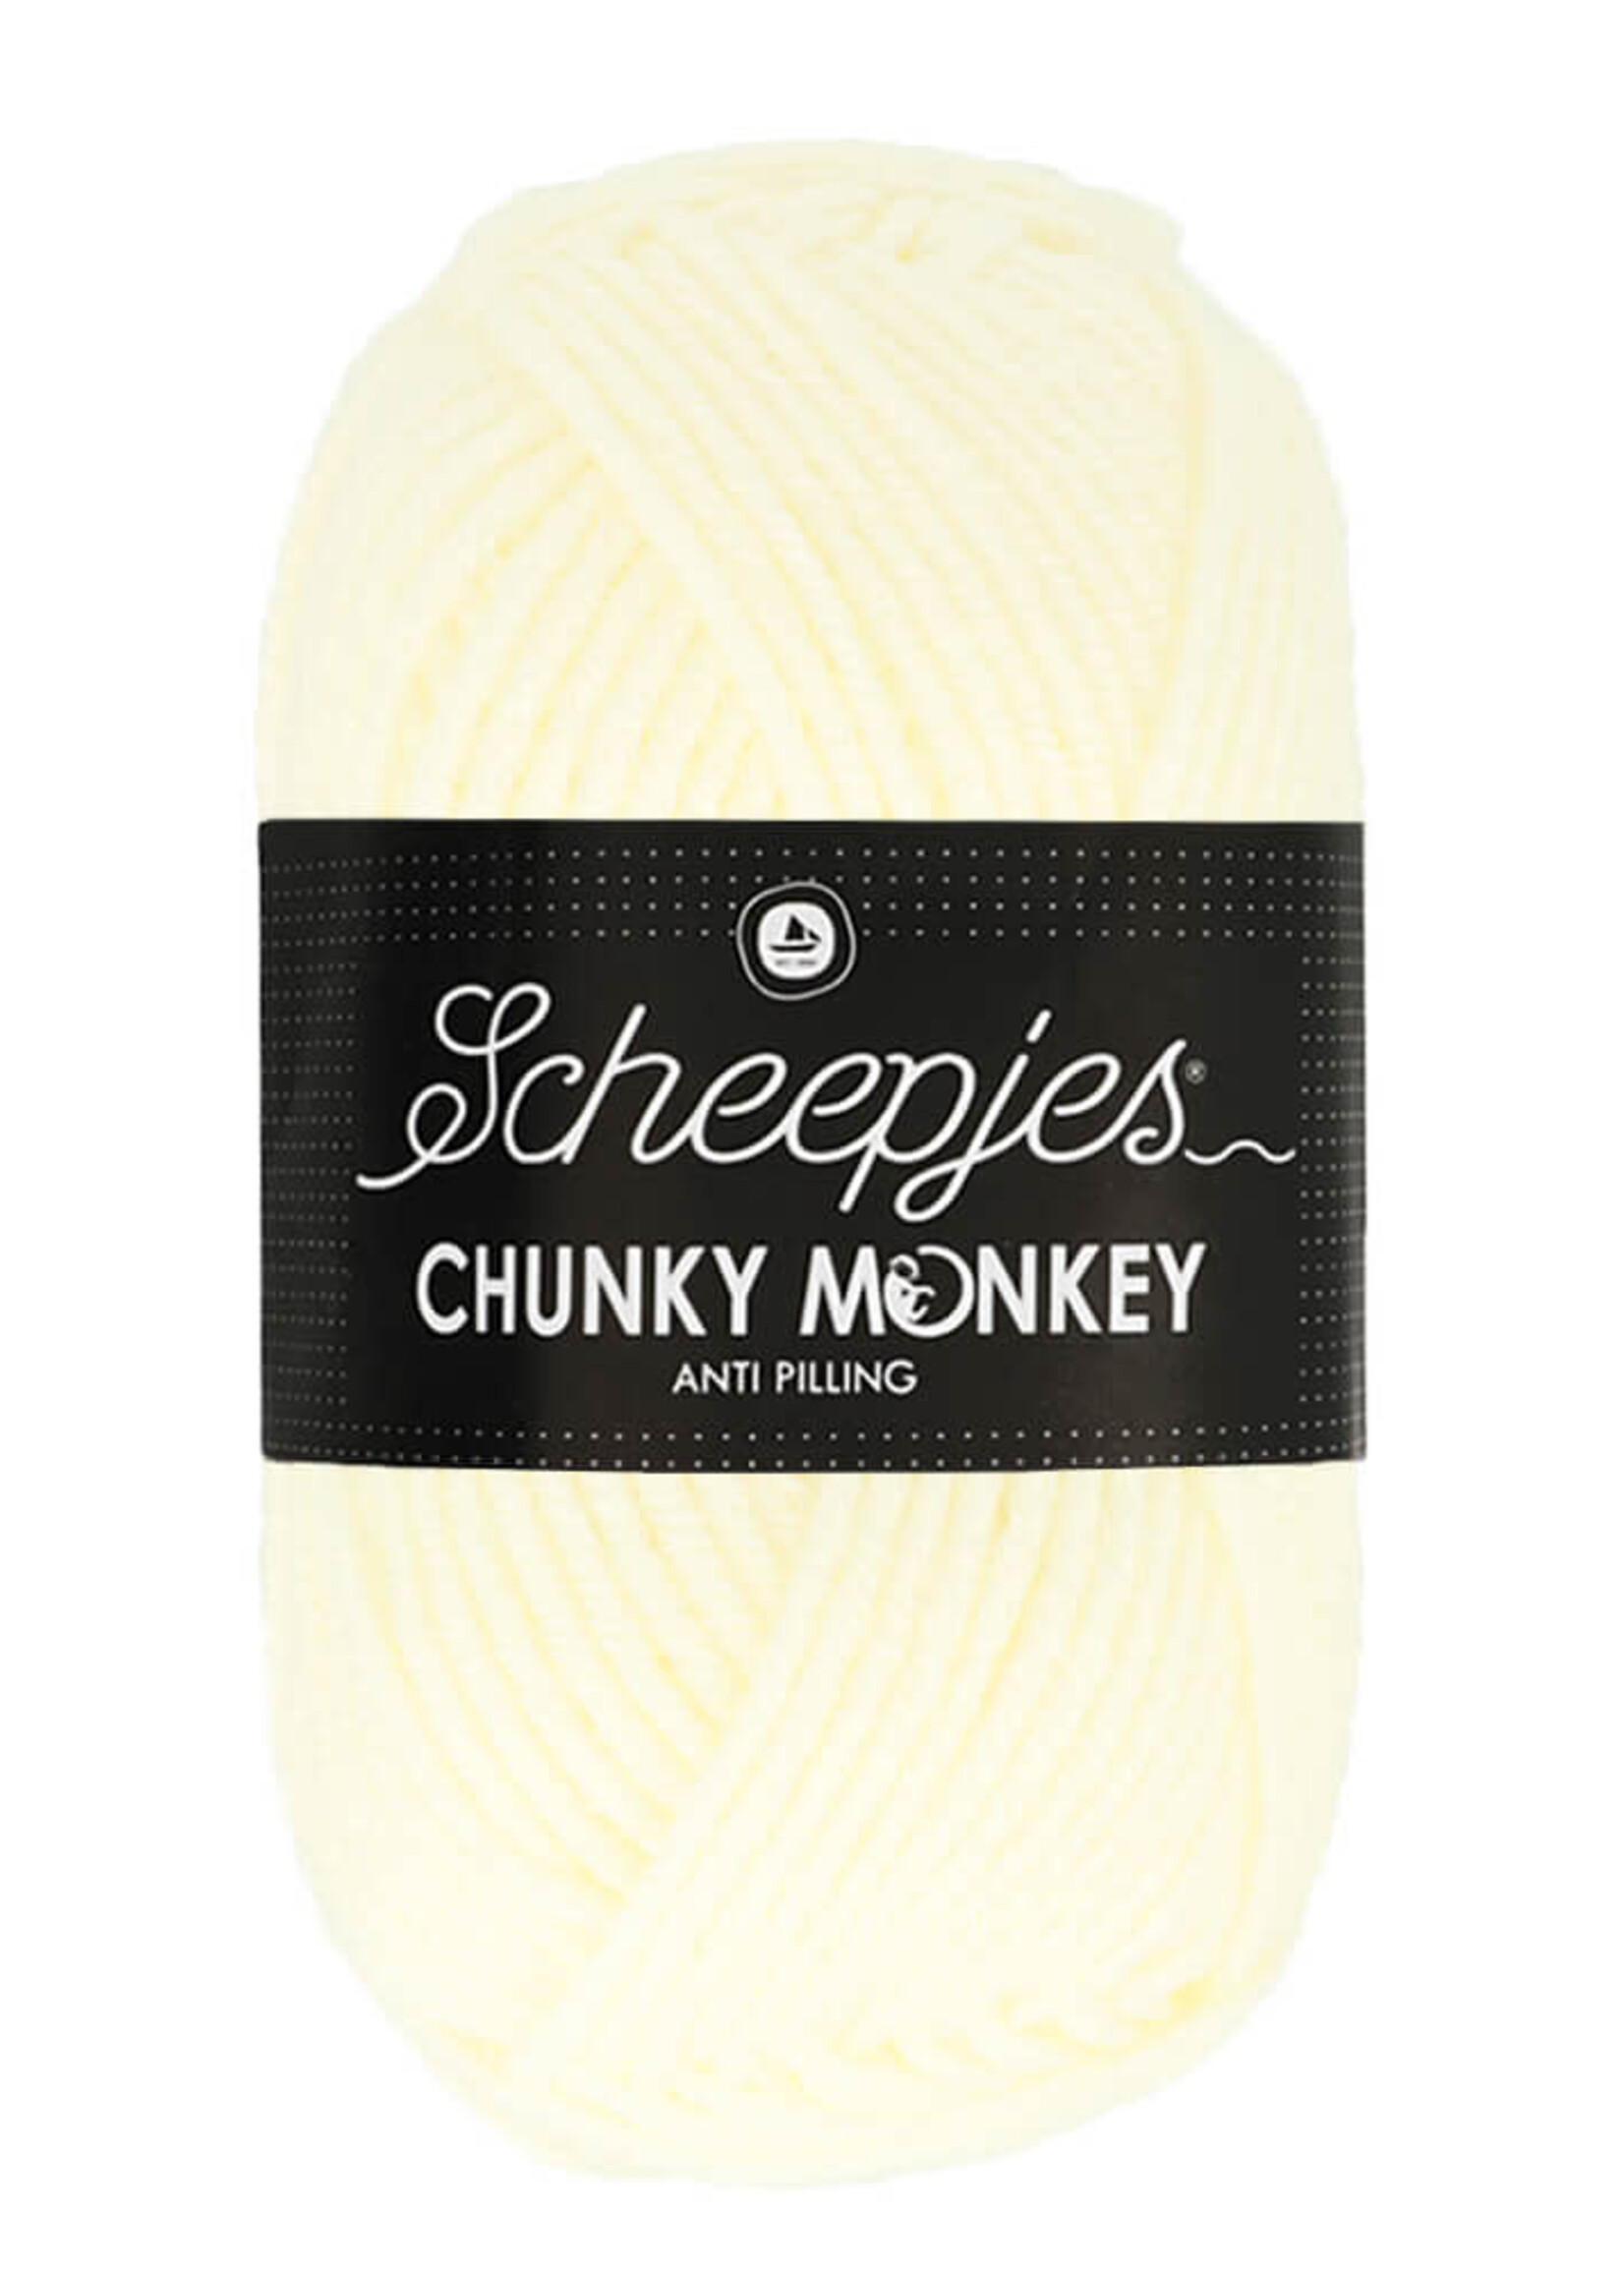 Scheepjes Chunky Monkey - Scheepjes -1005 Cream